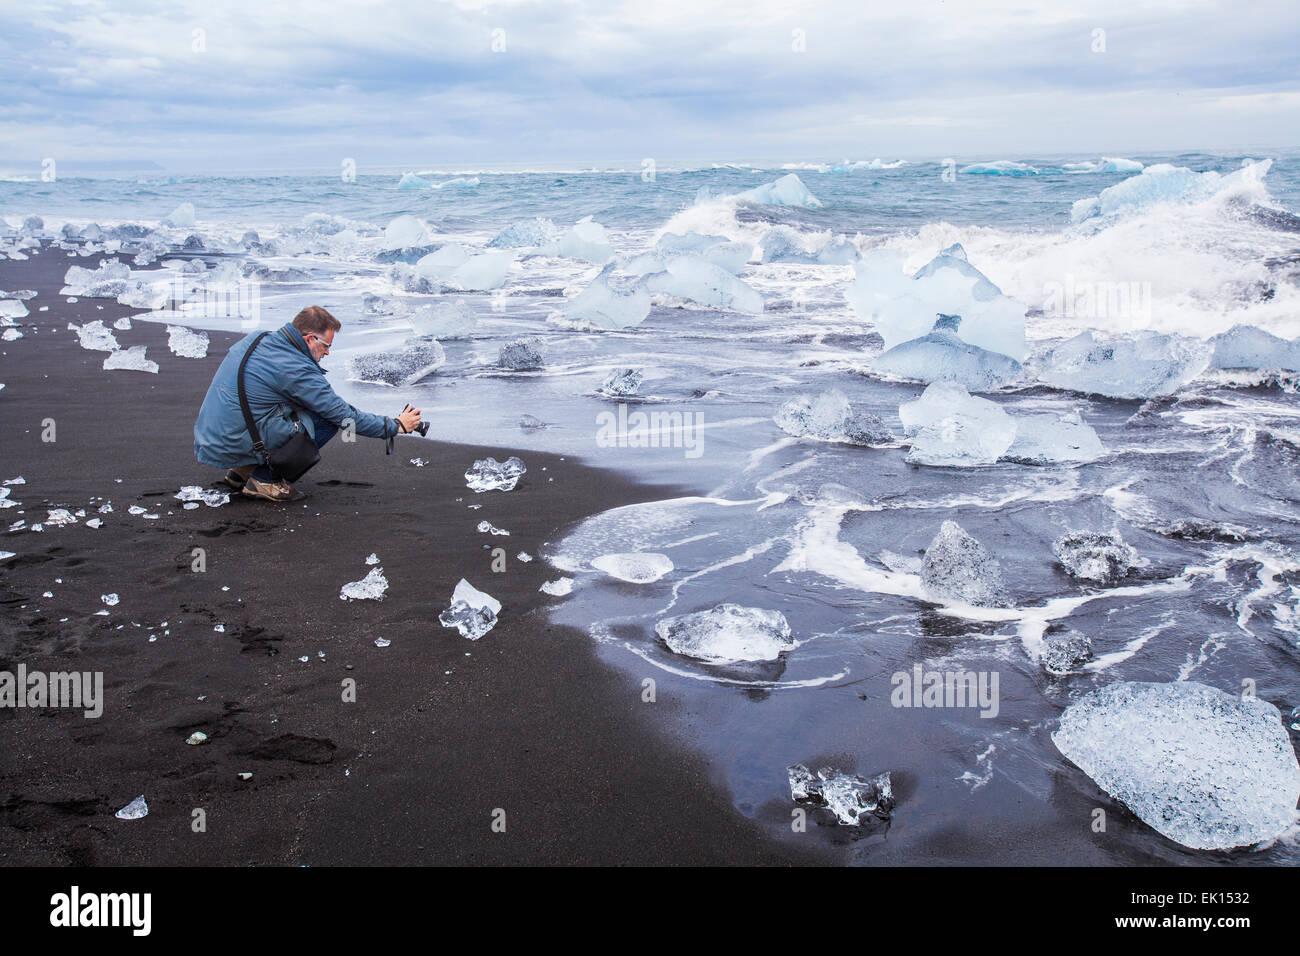 Vue d'un photographe de prendre des photos d'icebergs à l'océan près de la lagune glaciaire du Jökulsárlón dans le sud de l'Islande Banque D'Images